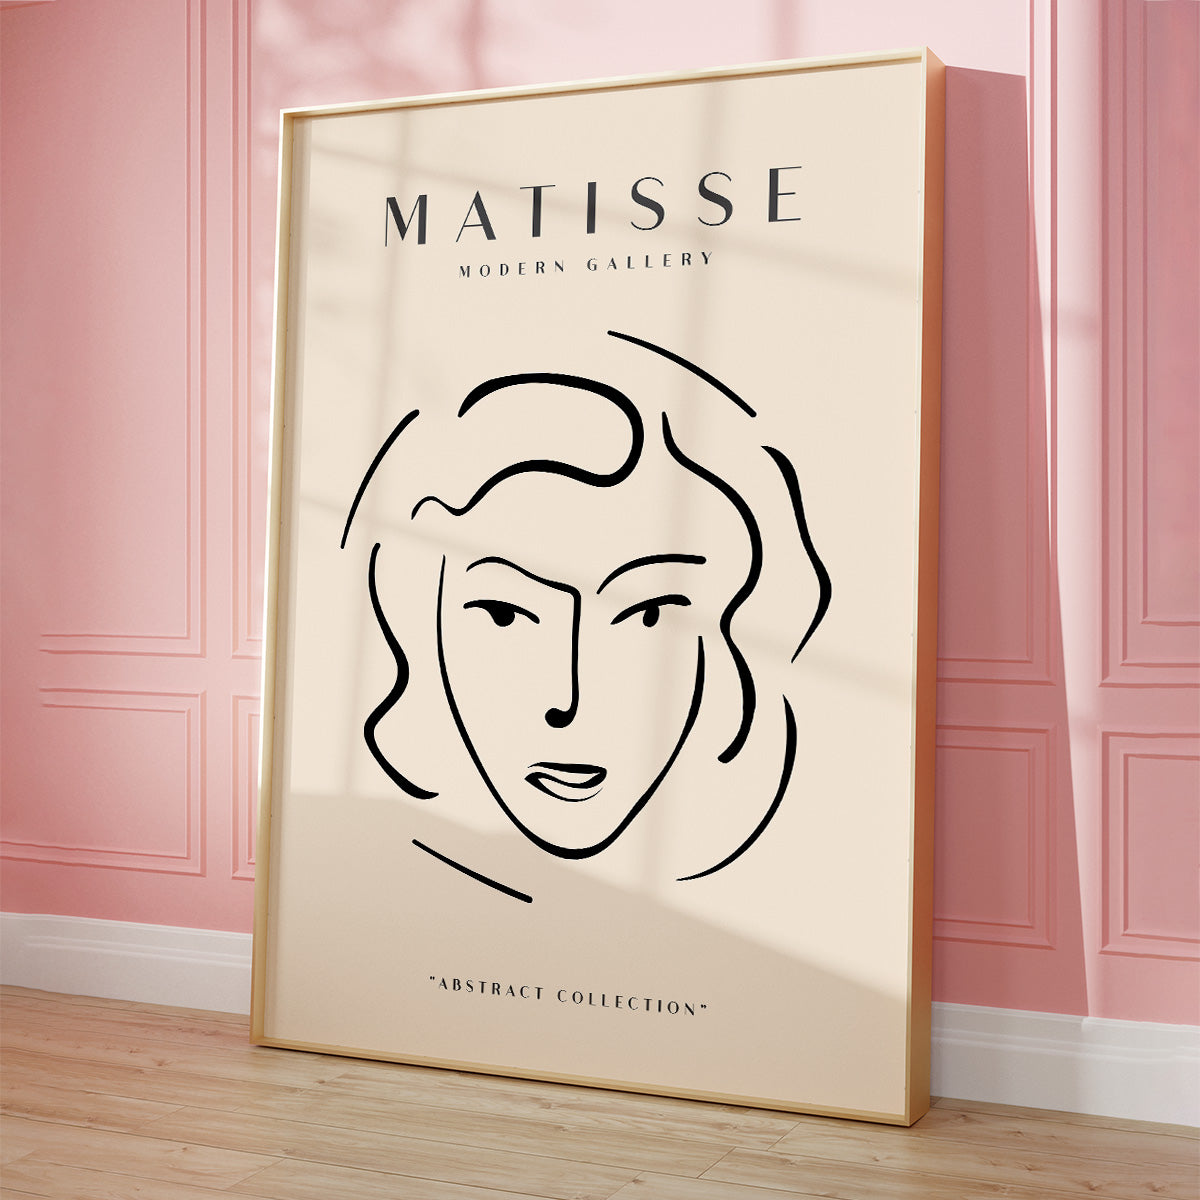 Matisse plakat på pink væg